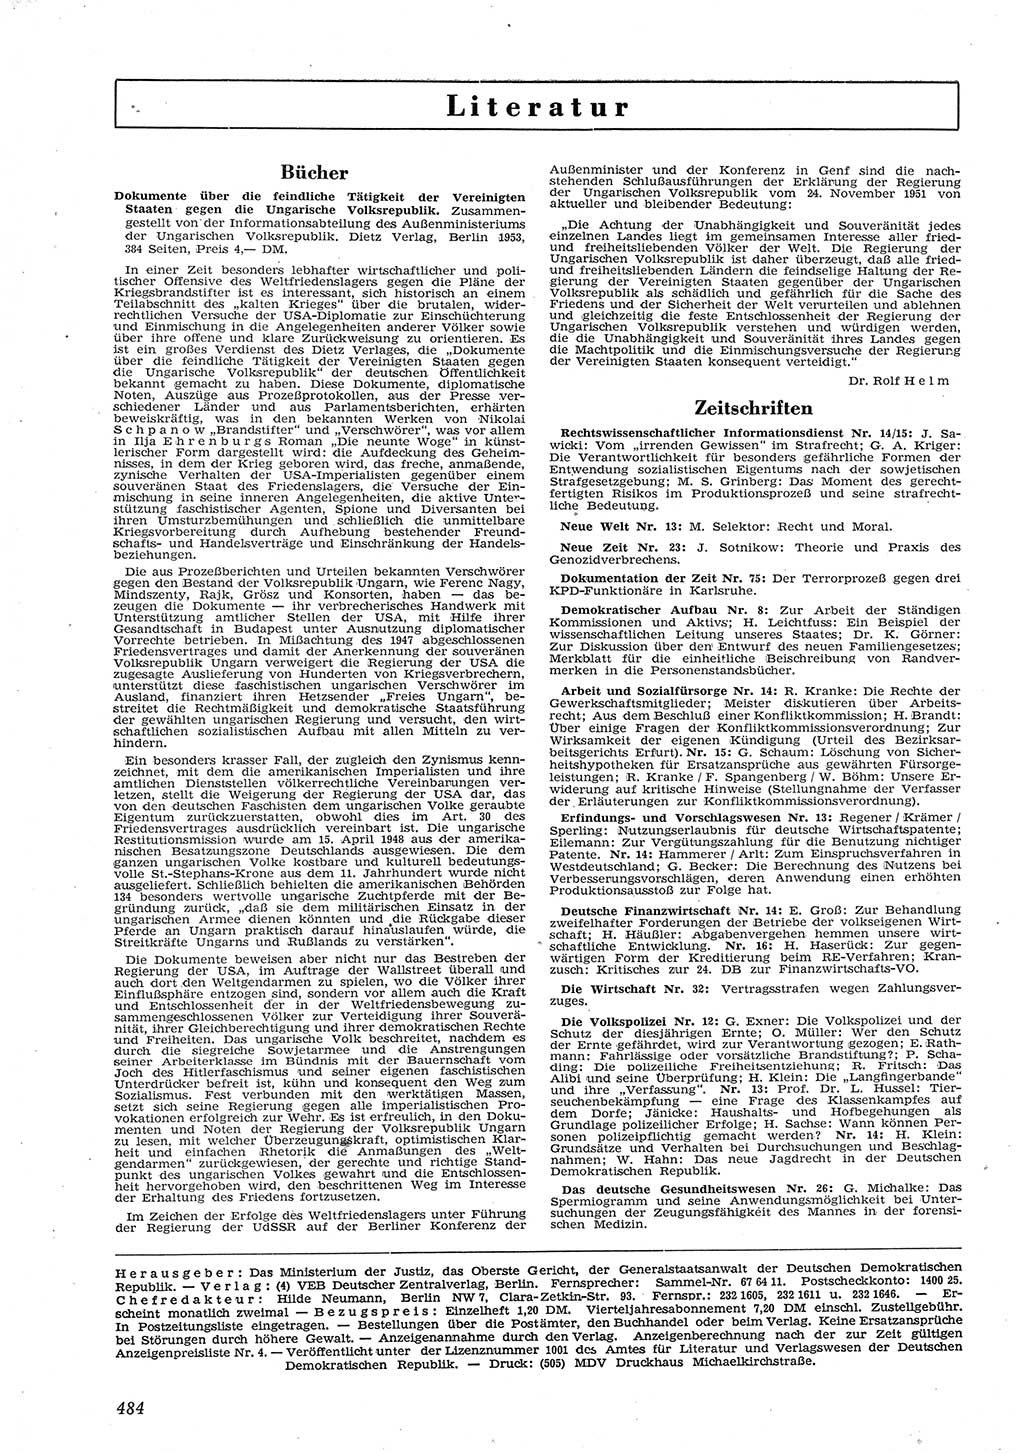 Neue Justiz (NJ), Zeitschrift für Recht und Rechtswissenschaft [Deutsche Demokratische Republik (DDR)], 8. Jahrgang 1954, Seite 484 (NJ DDR 1954, S. 484)